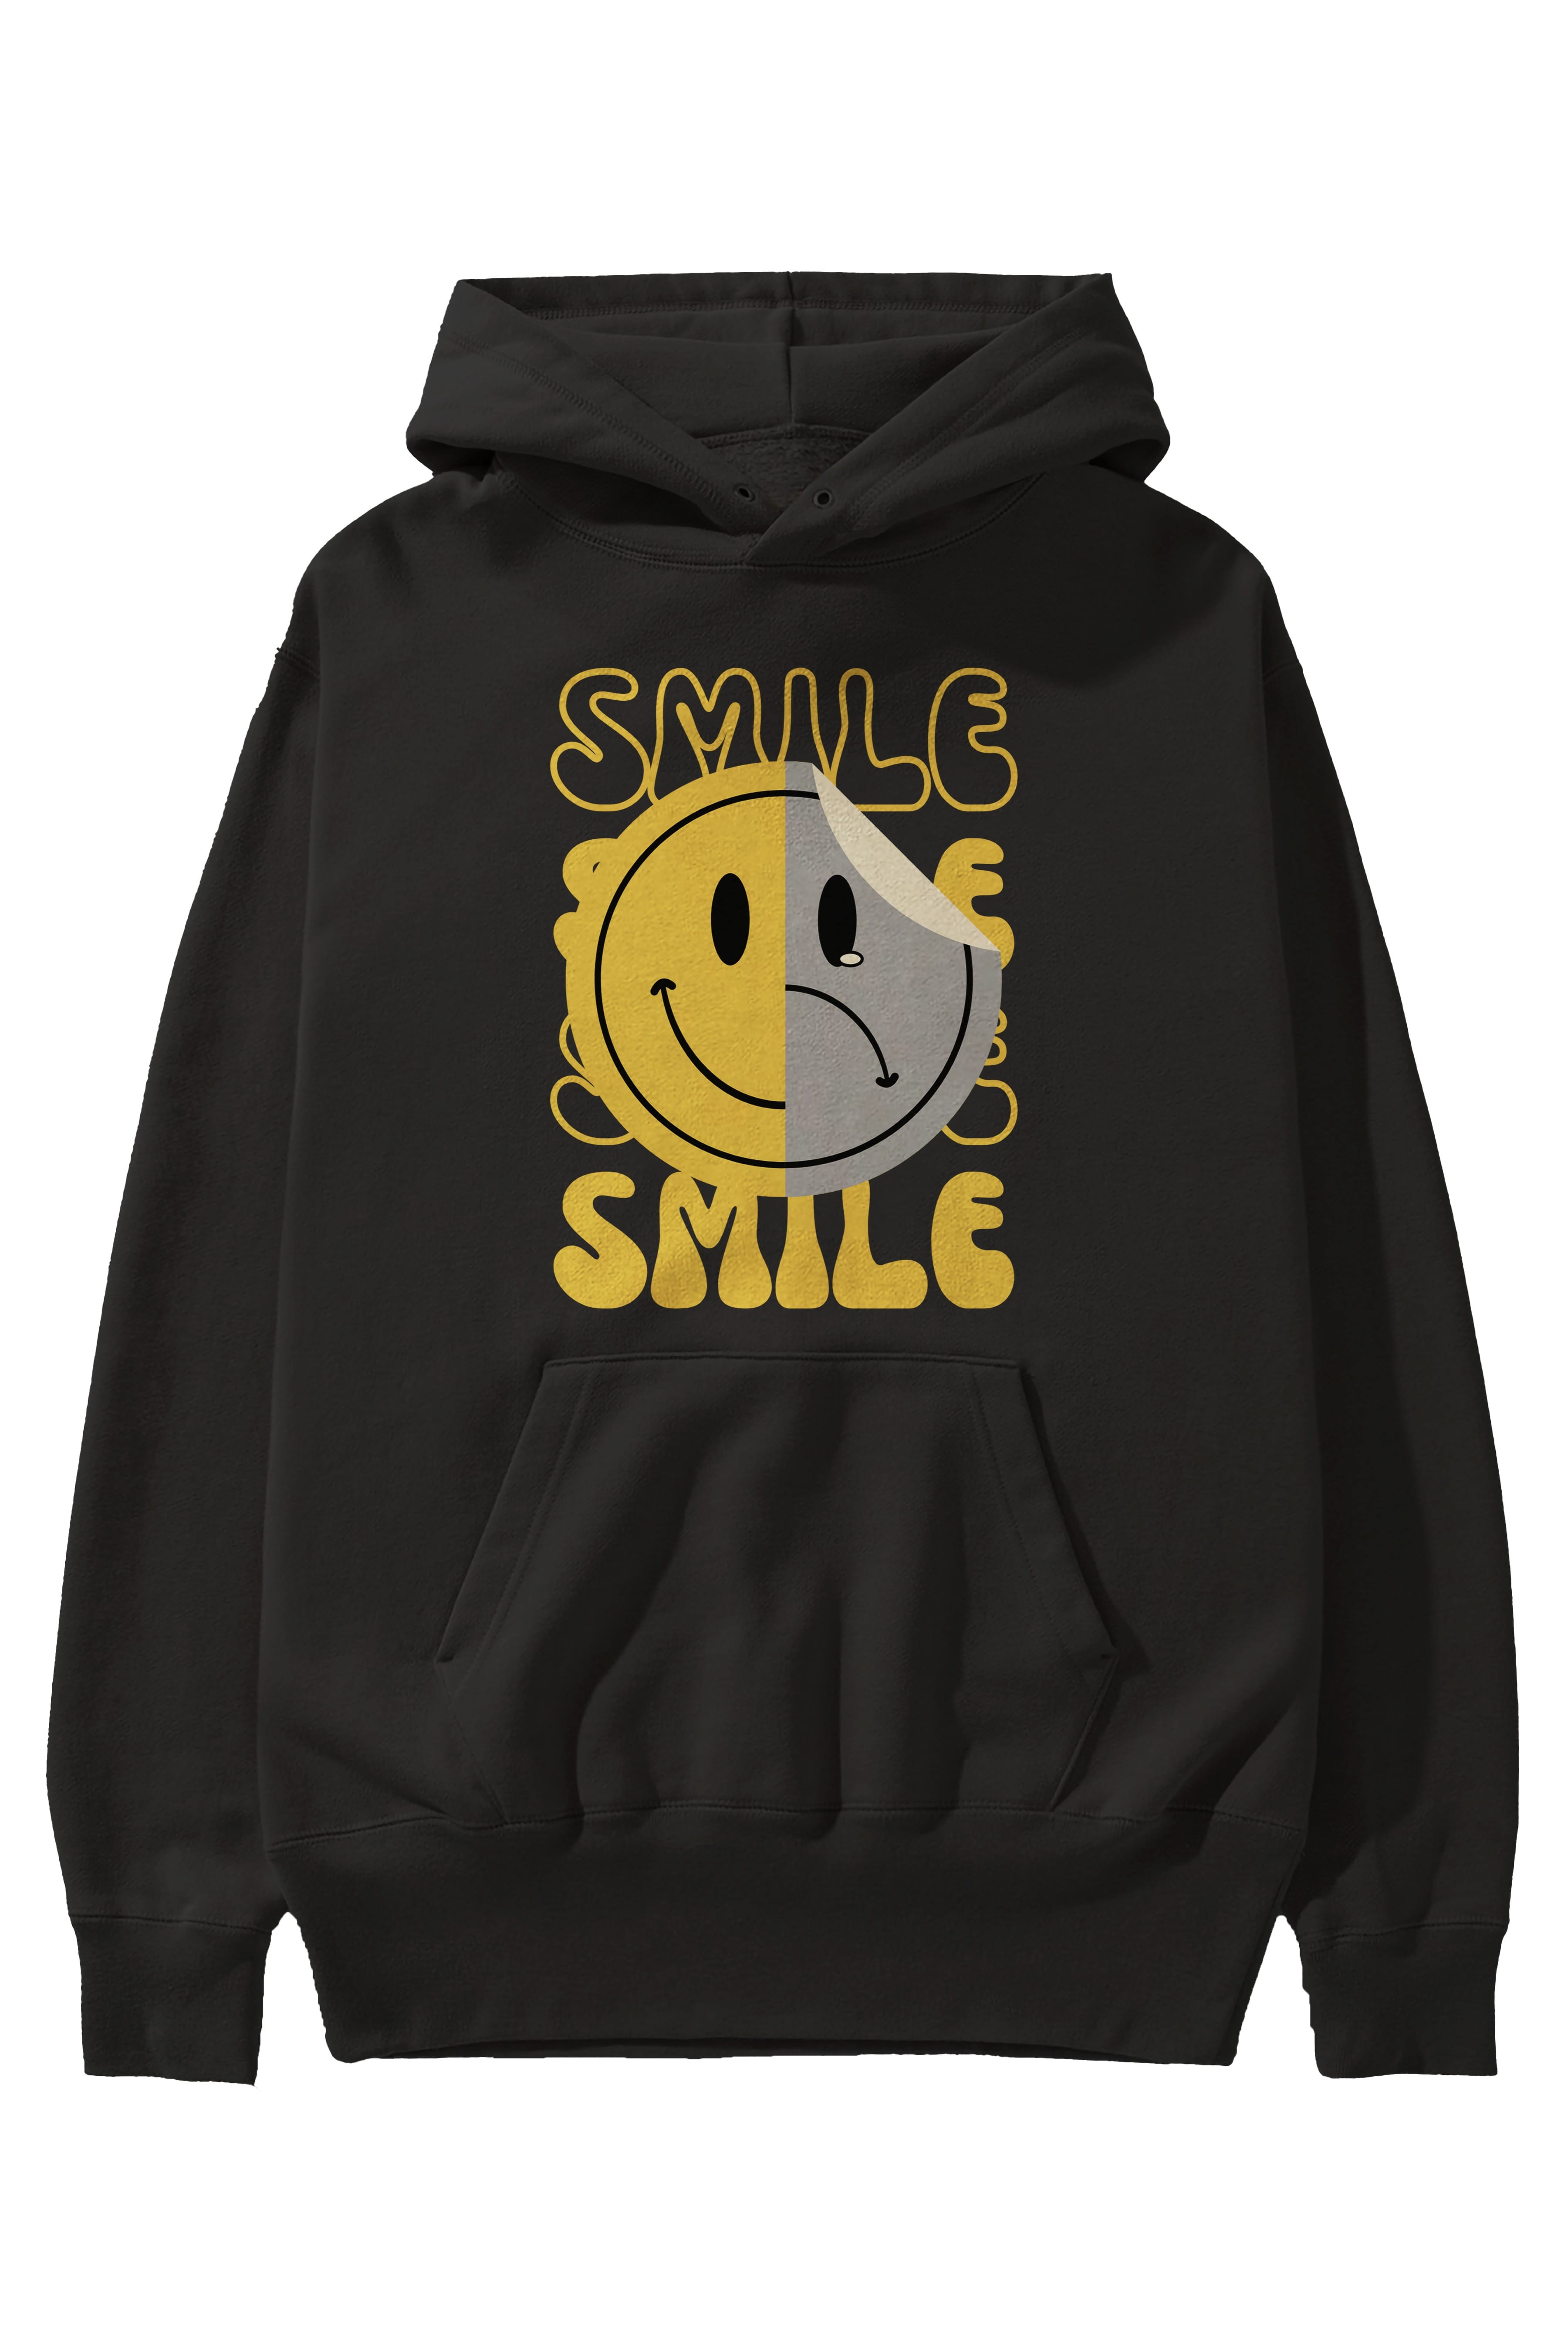 Smile Yazılı Ön Baskılı Oversize Hoodie Kapüşonlu Sweatshirt Erkek Kadın Unisex